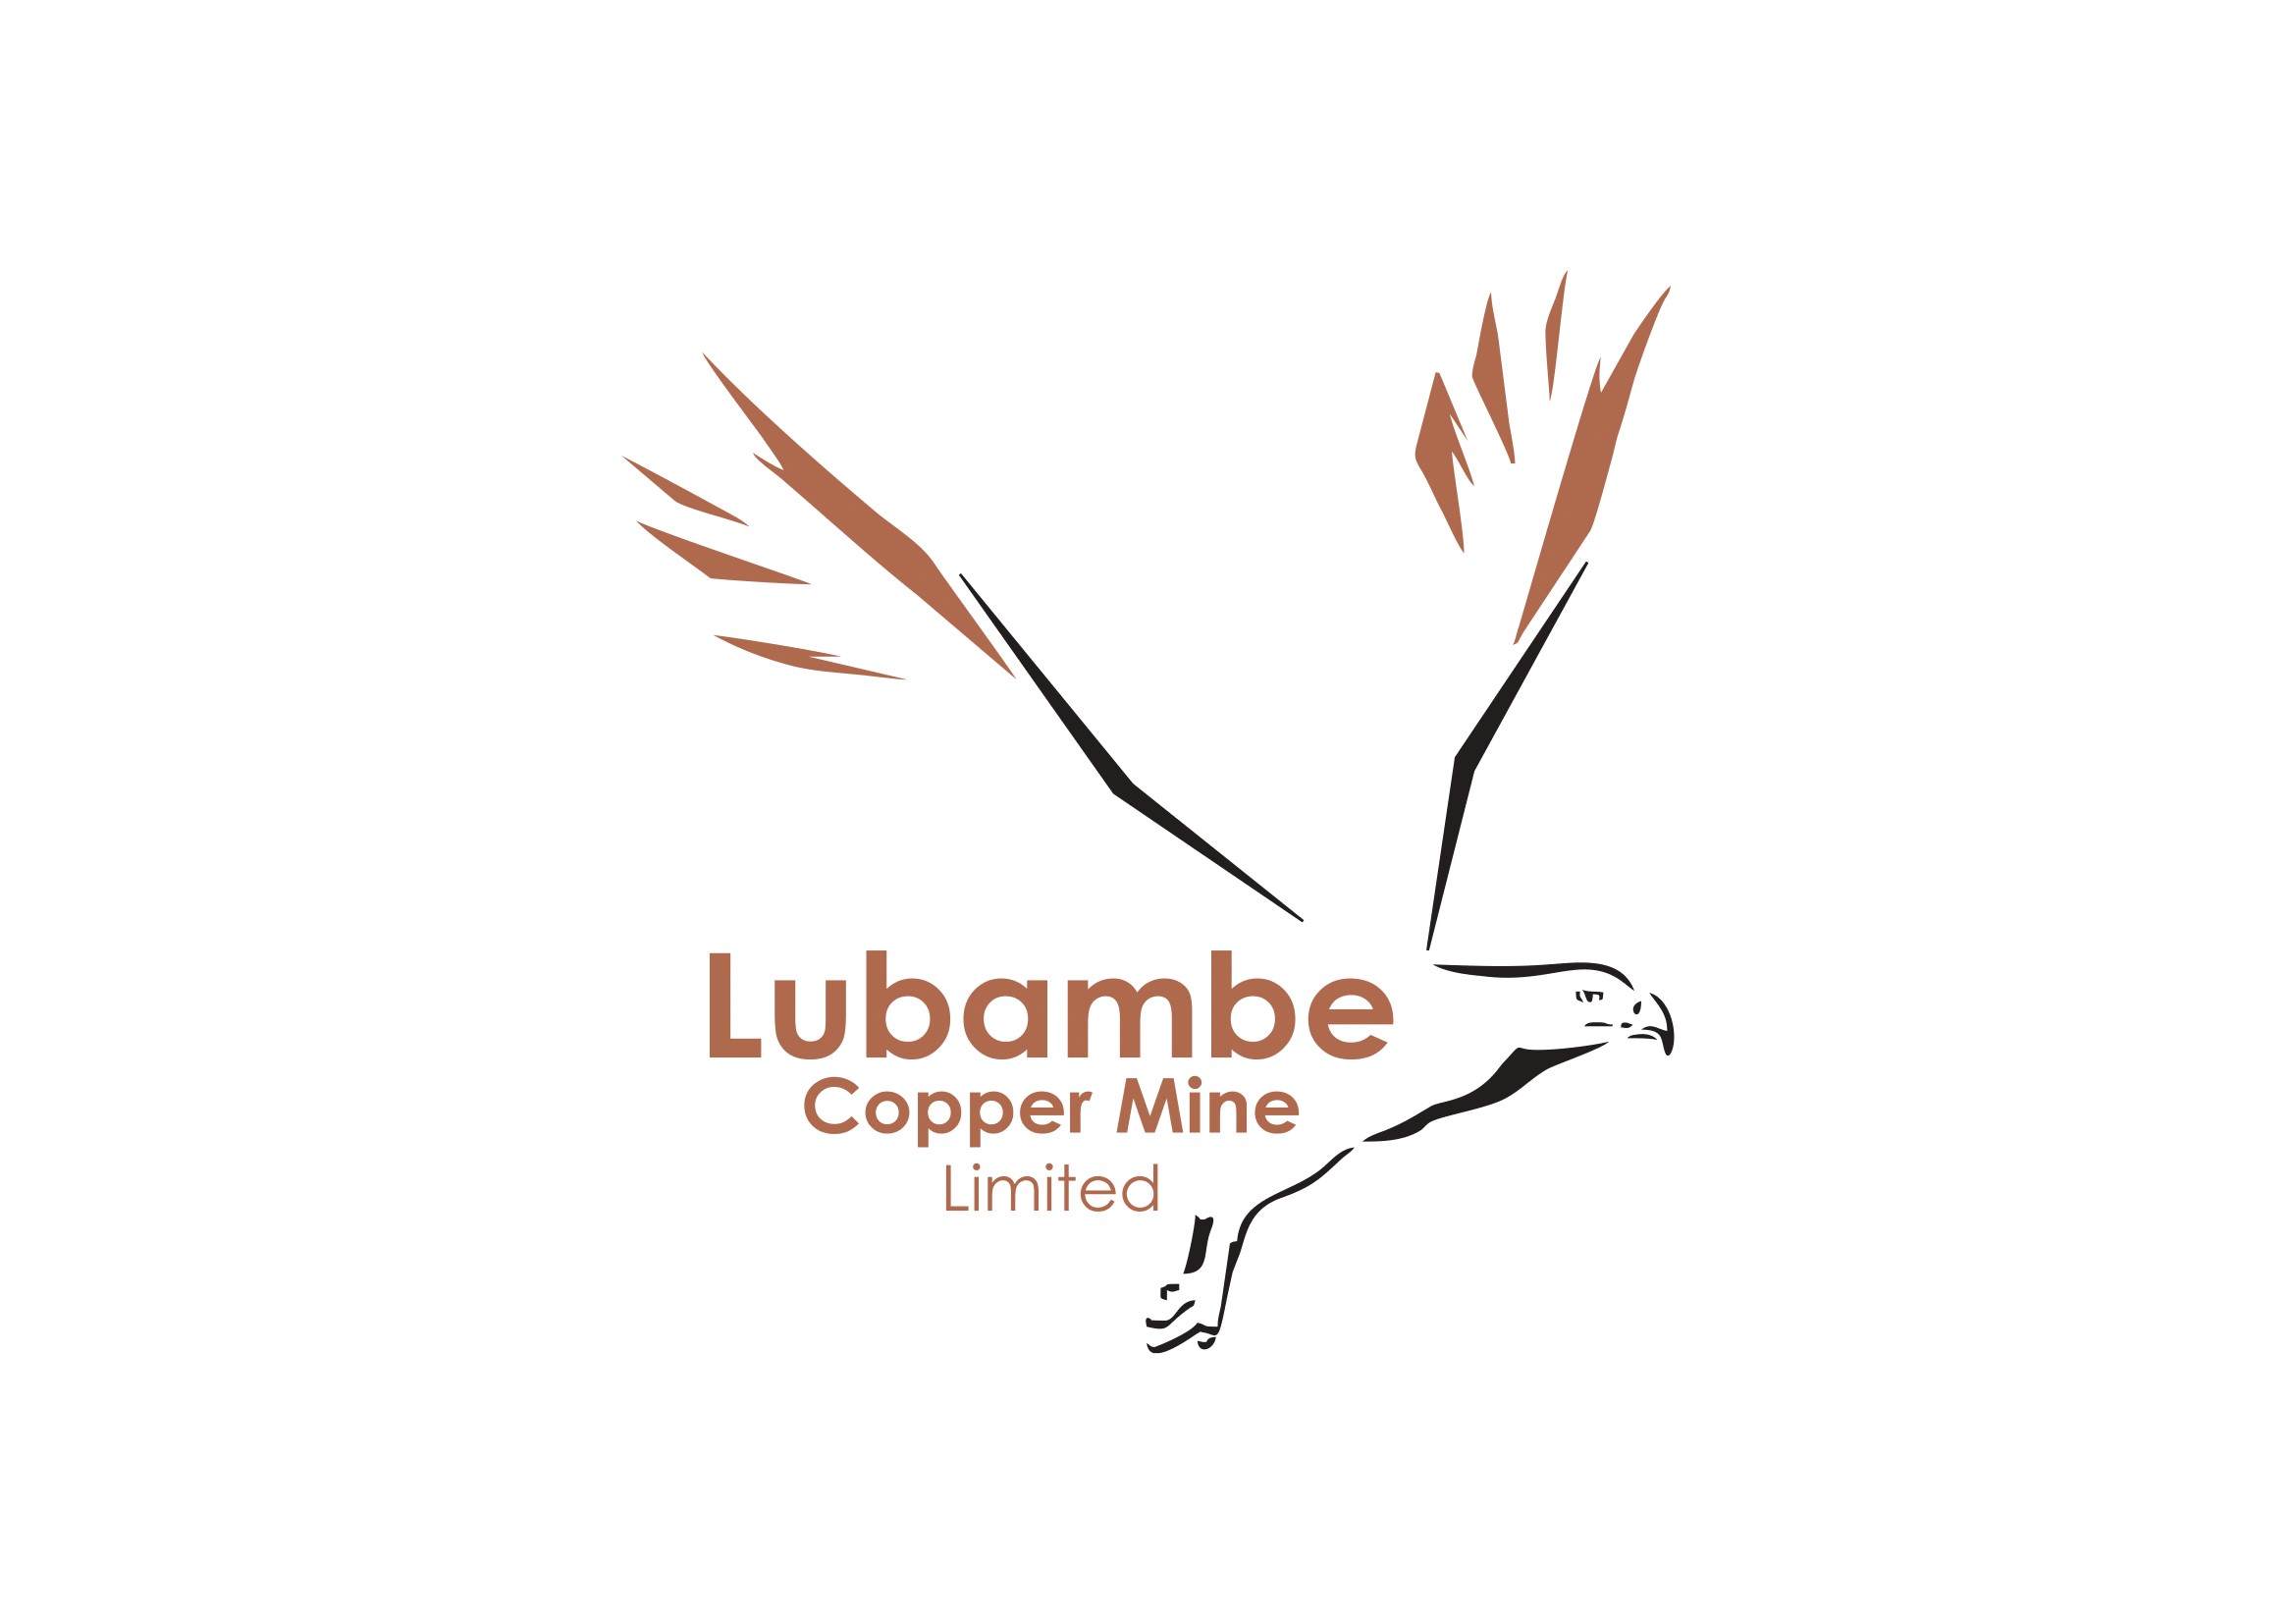 Lubambe Copper Mine